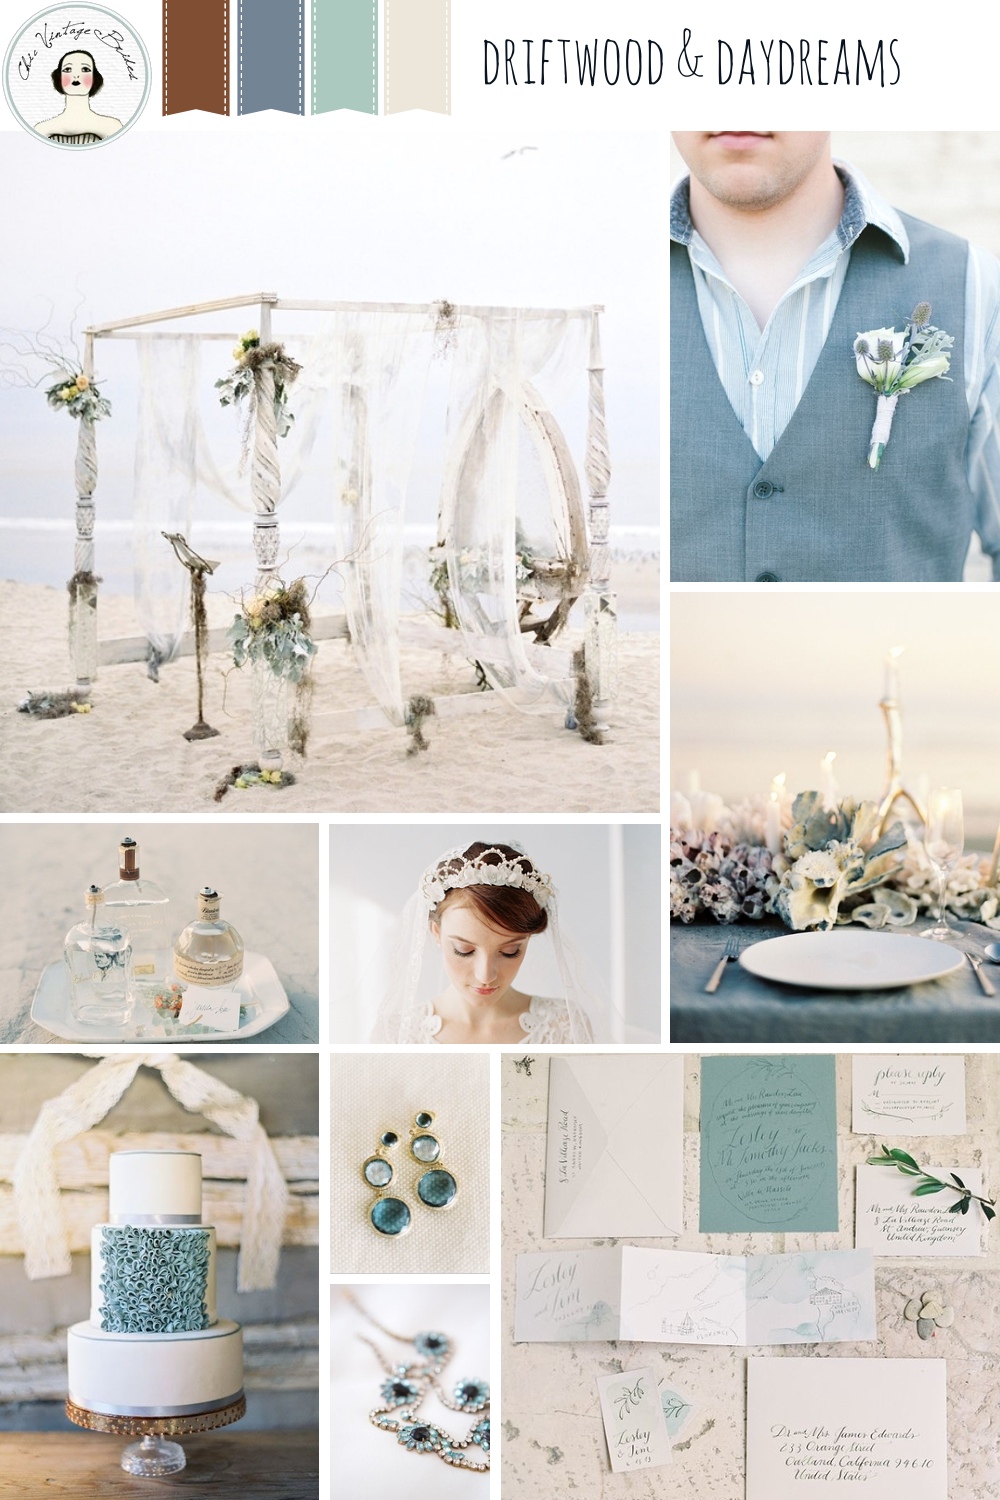 Driftwood & Daydreams Beach Wedding Inspiration Board